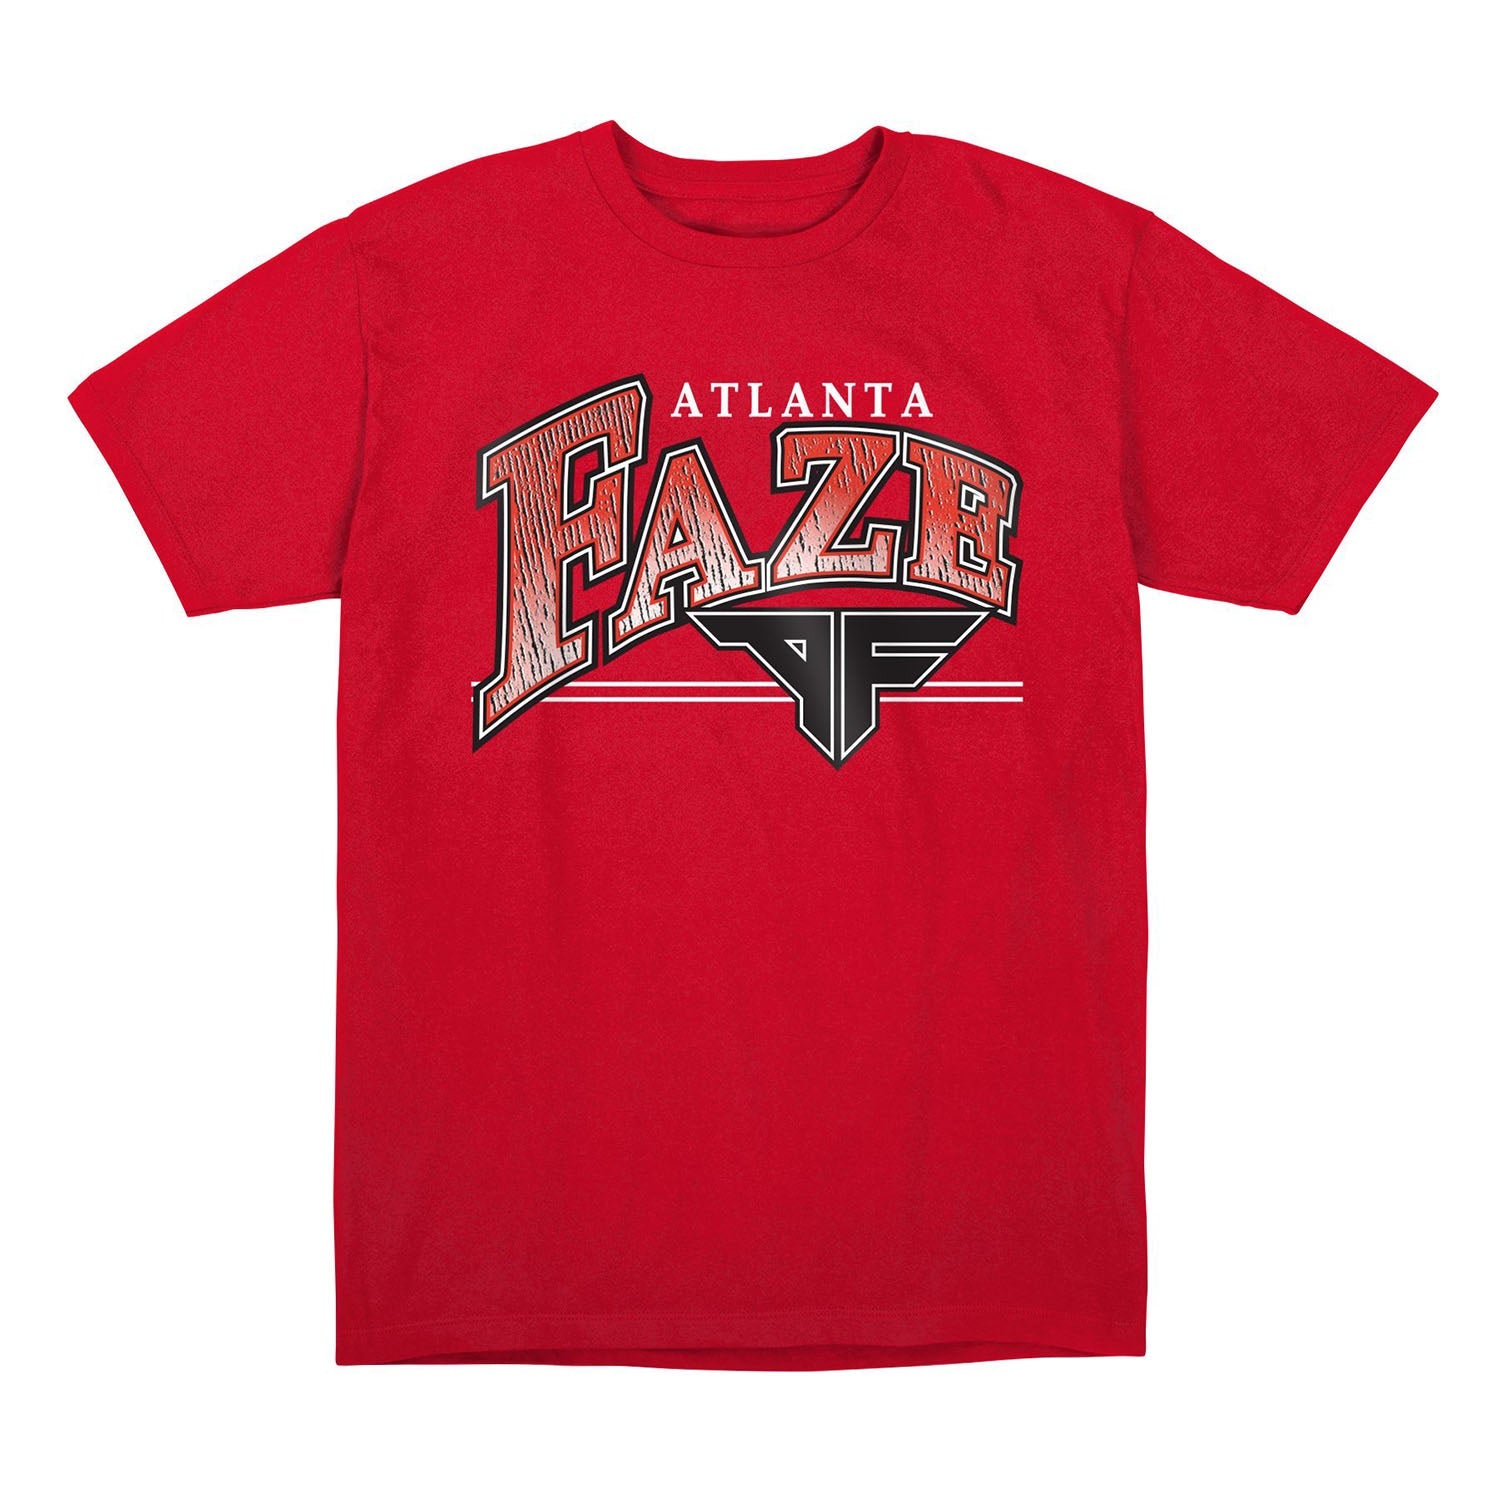 Atlanta FaZe Red Retro T-Shirt - Front View